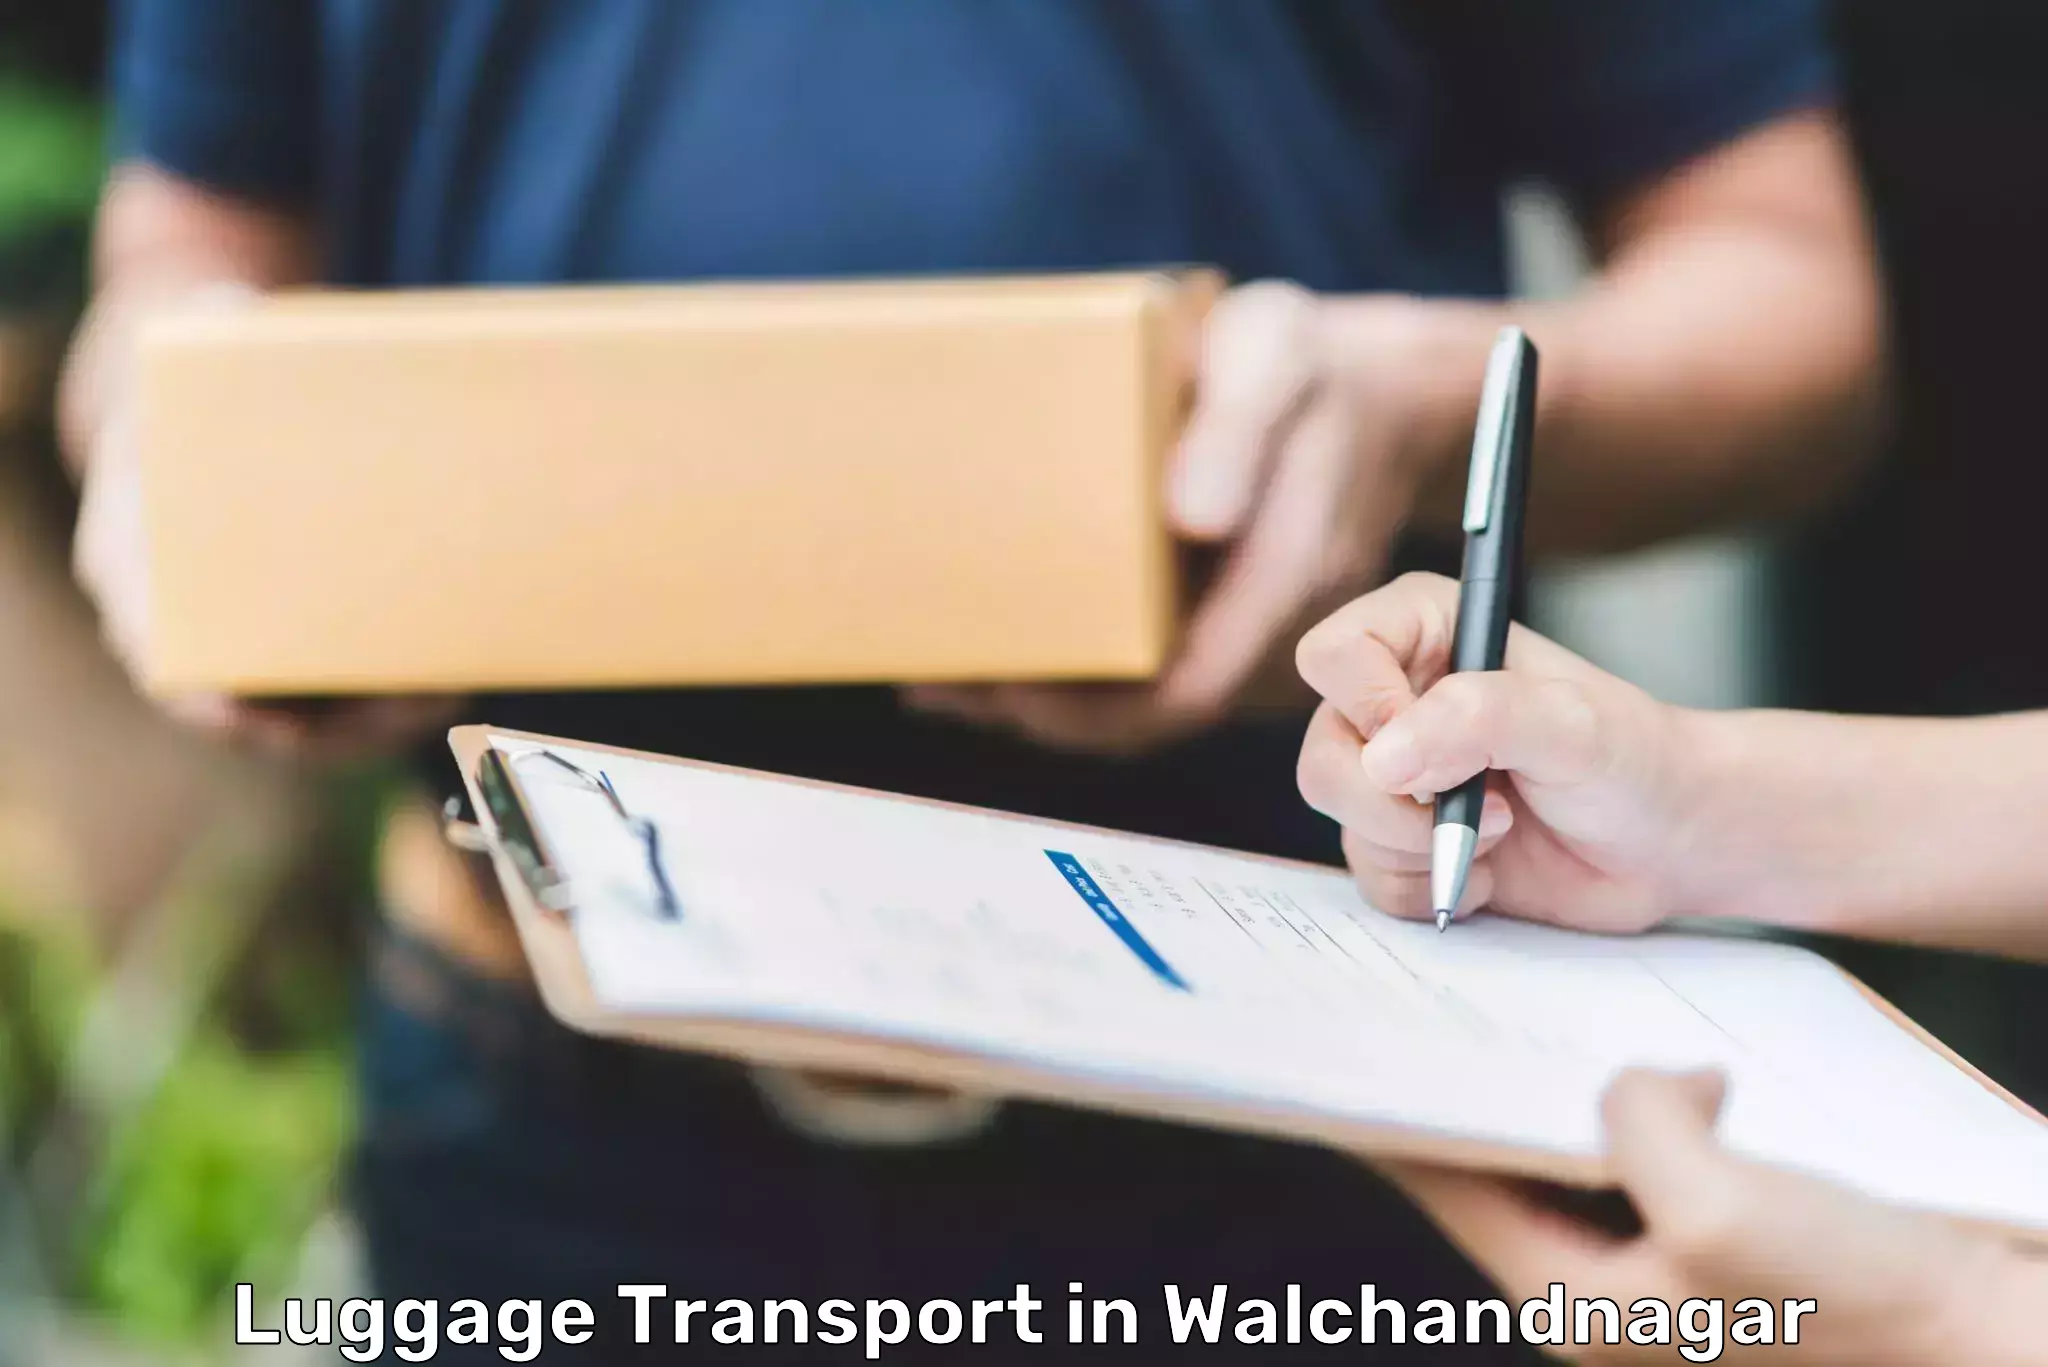 Luggage shipping estimate in Walchandnagar